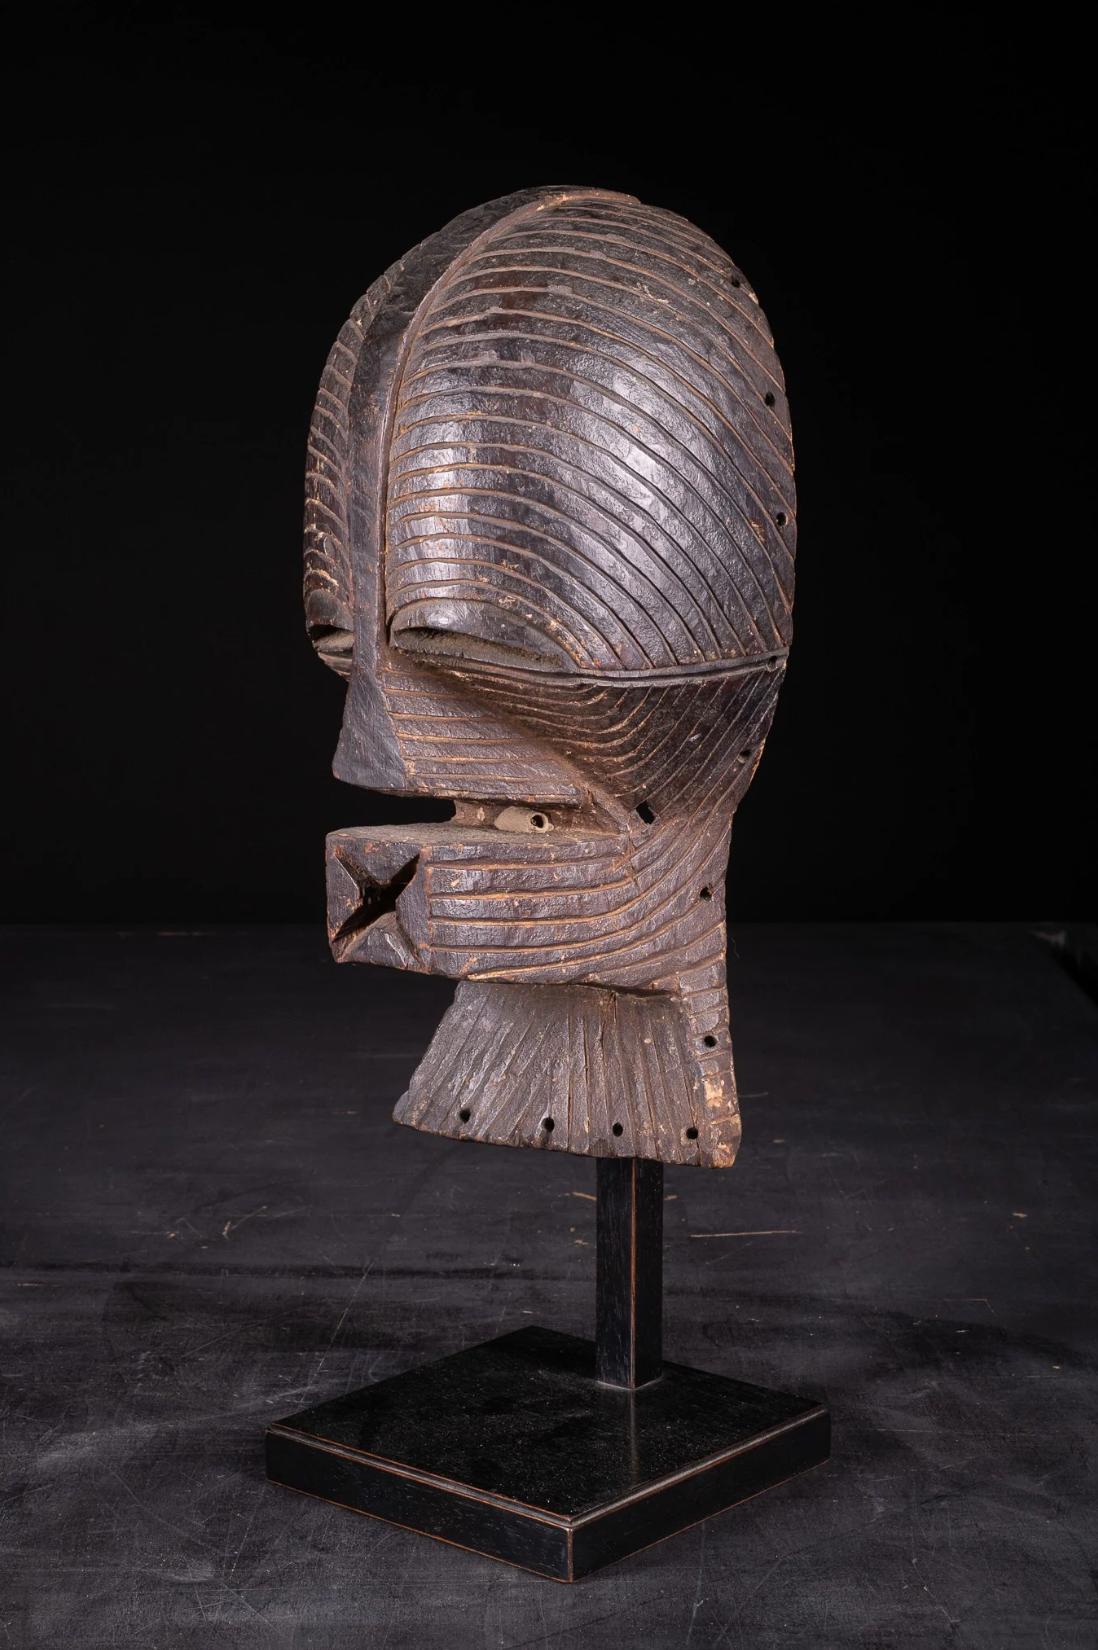 Traditionell wurden die Kifwebe-Masken von den Mitgliedern des geheimen Maskenbundes Bwadi Bwa Kifwebe der Luba und des Songye-Volkes, die im zentralen Teil des Kongo leben, hergestellt und getragen. Sie tanzten und repräsentierten Geister, die